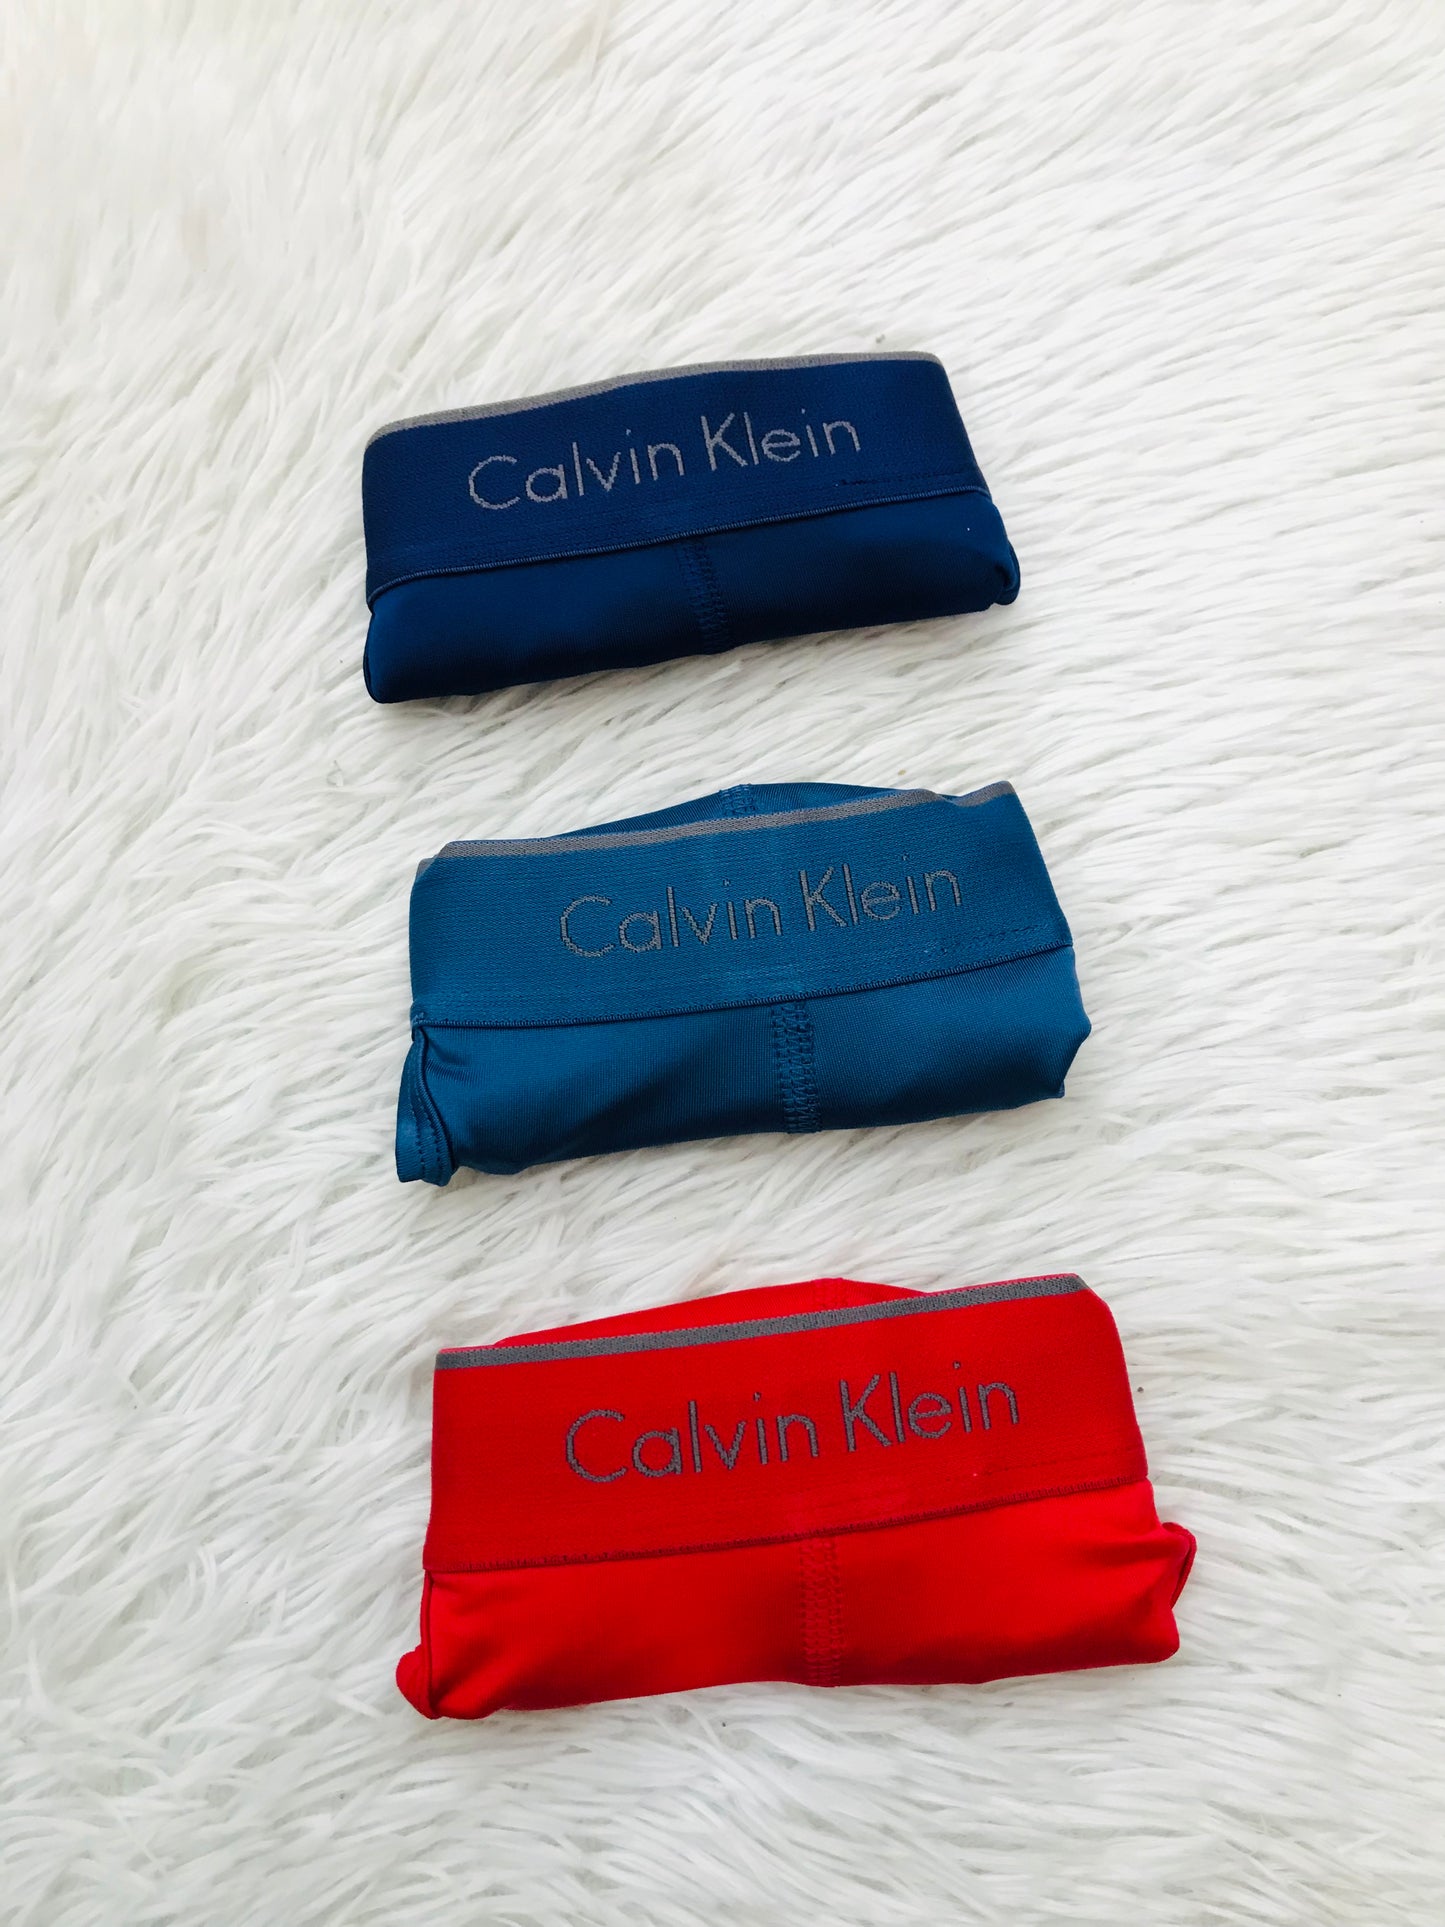 Set de 3 Boxers sexi estilo tanga Calvin Klein original, 1 azul marino oscuro, 1 azul, 1 rojo con letras CALVIN KLEIN